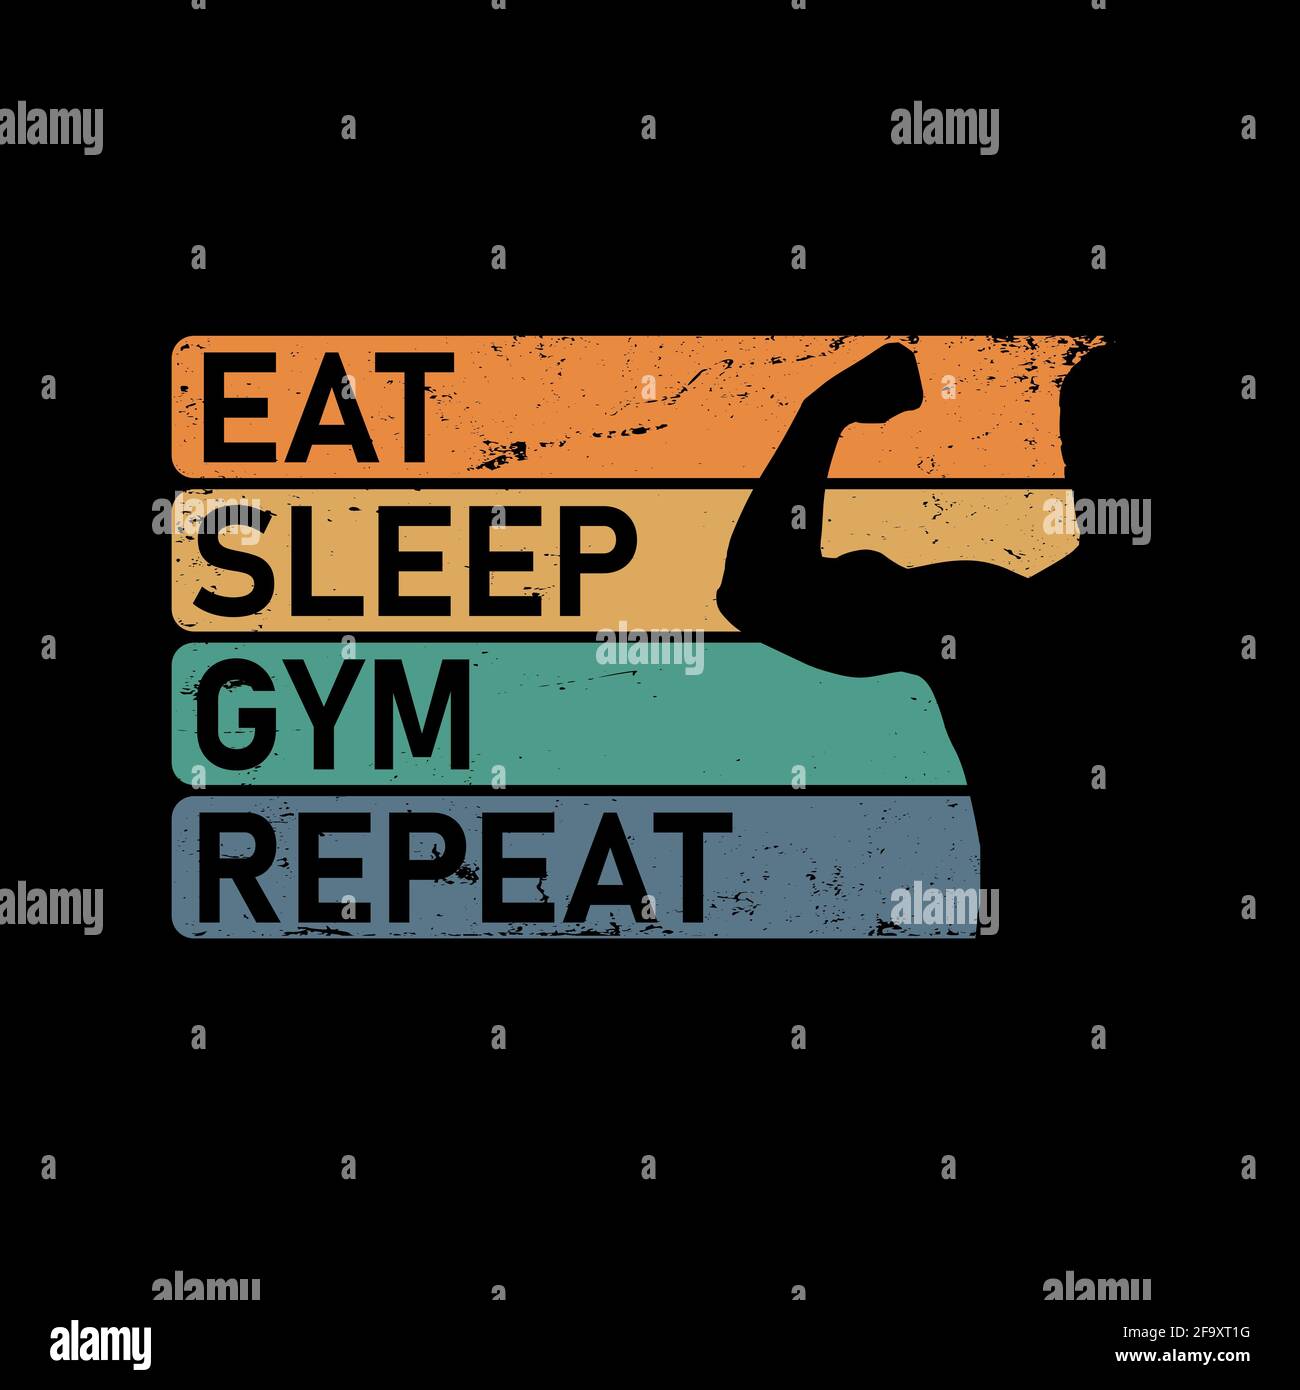 Treno Eat Sleep Ripeti. Citazione motivazionale. Modello per palestra, t-shirt, copertina, banner o le tue opere d'arte. Illustrazione Vettoriale